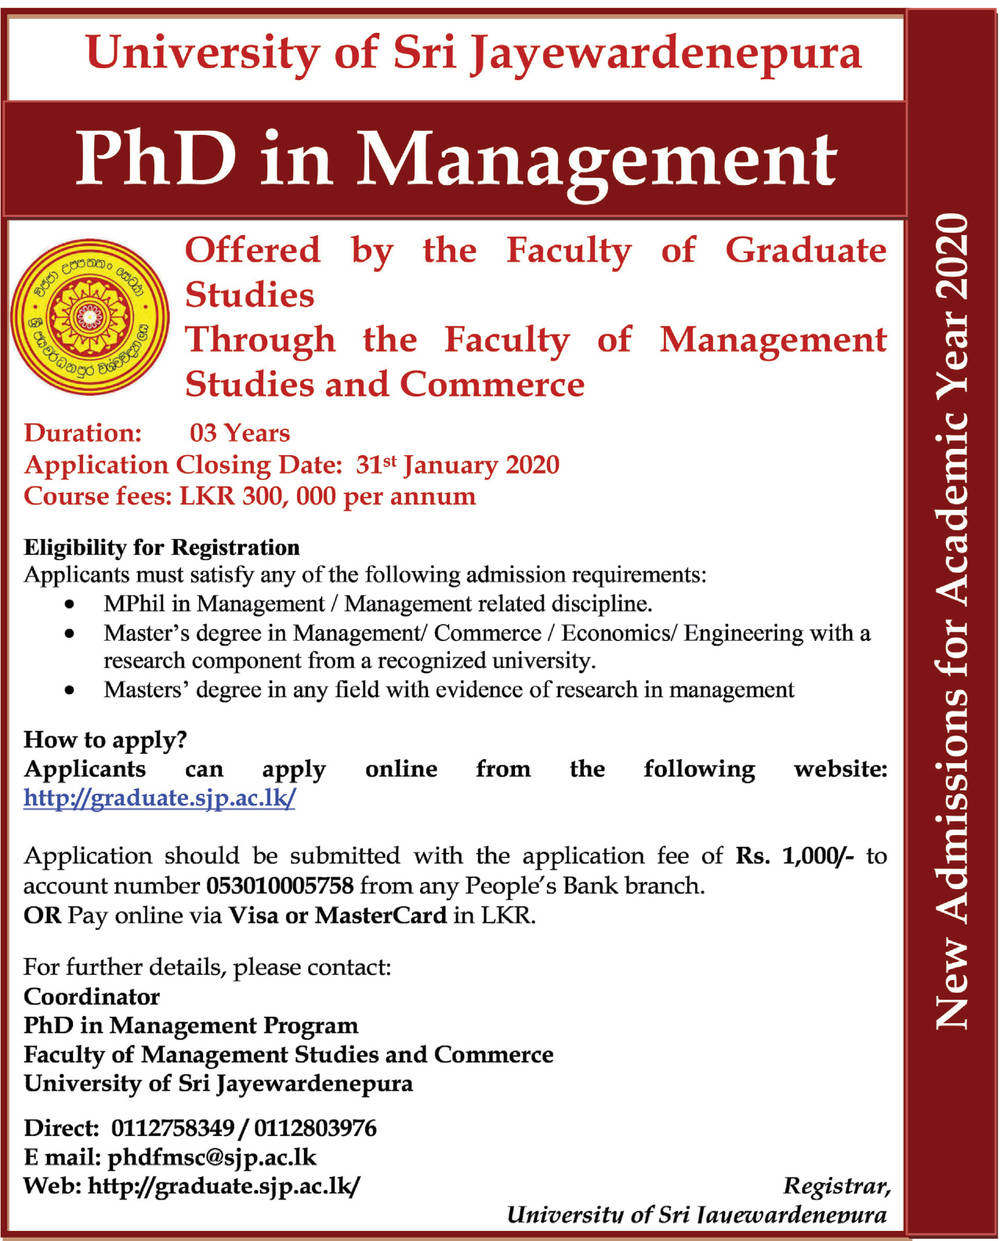 Public Management courses - University of Sri Jayewardenepura